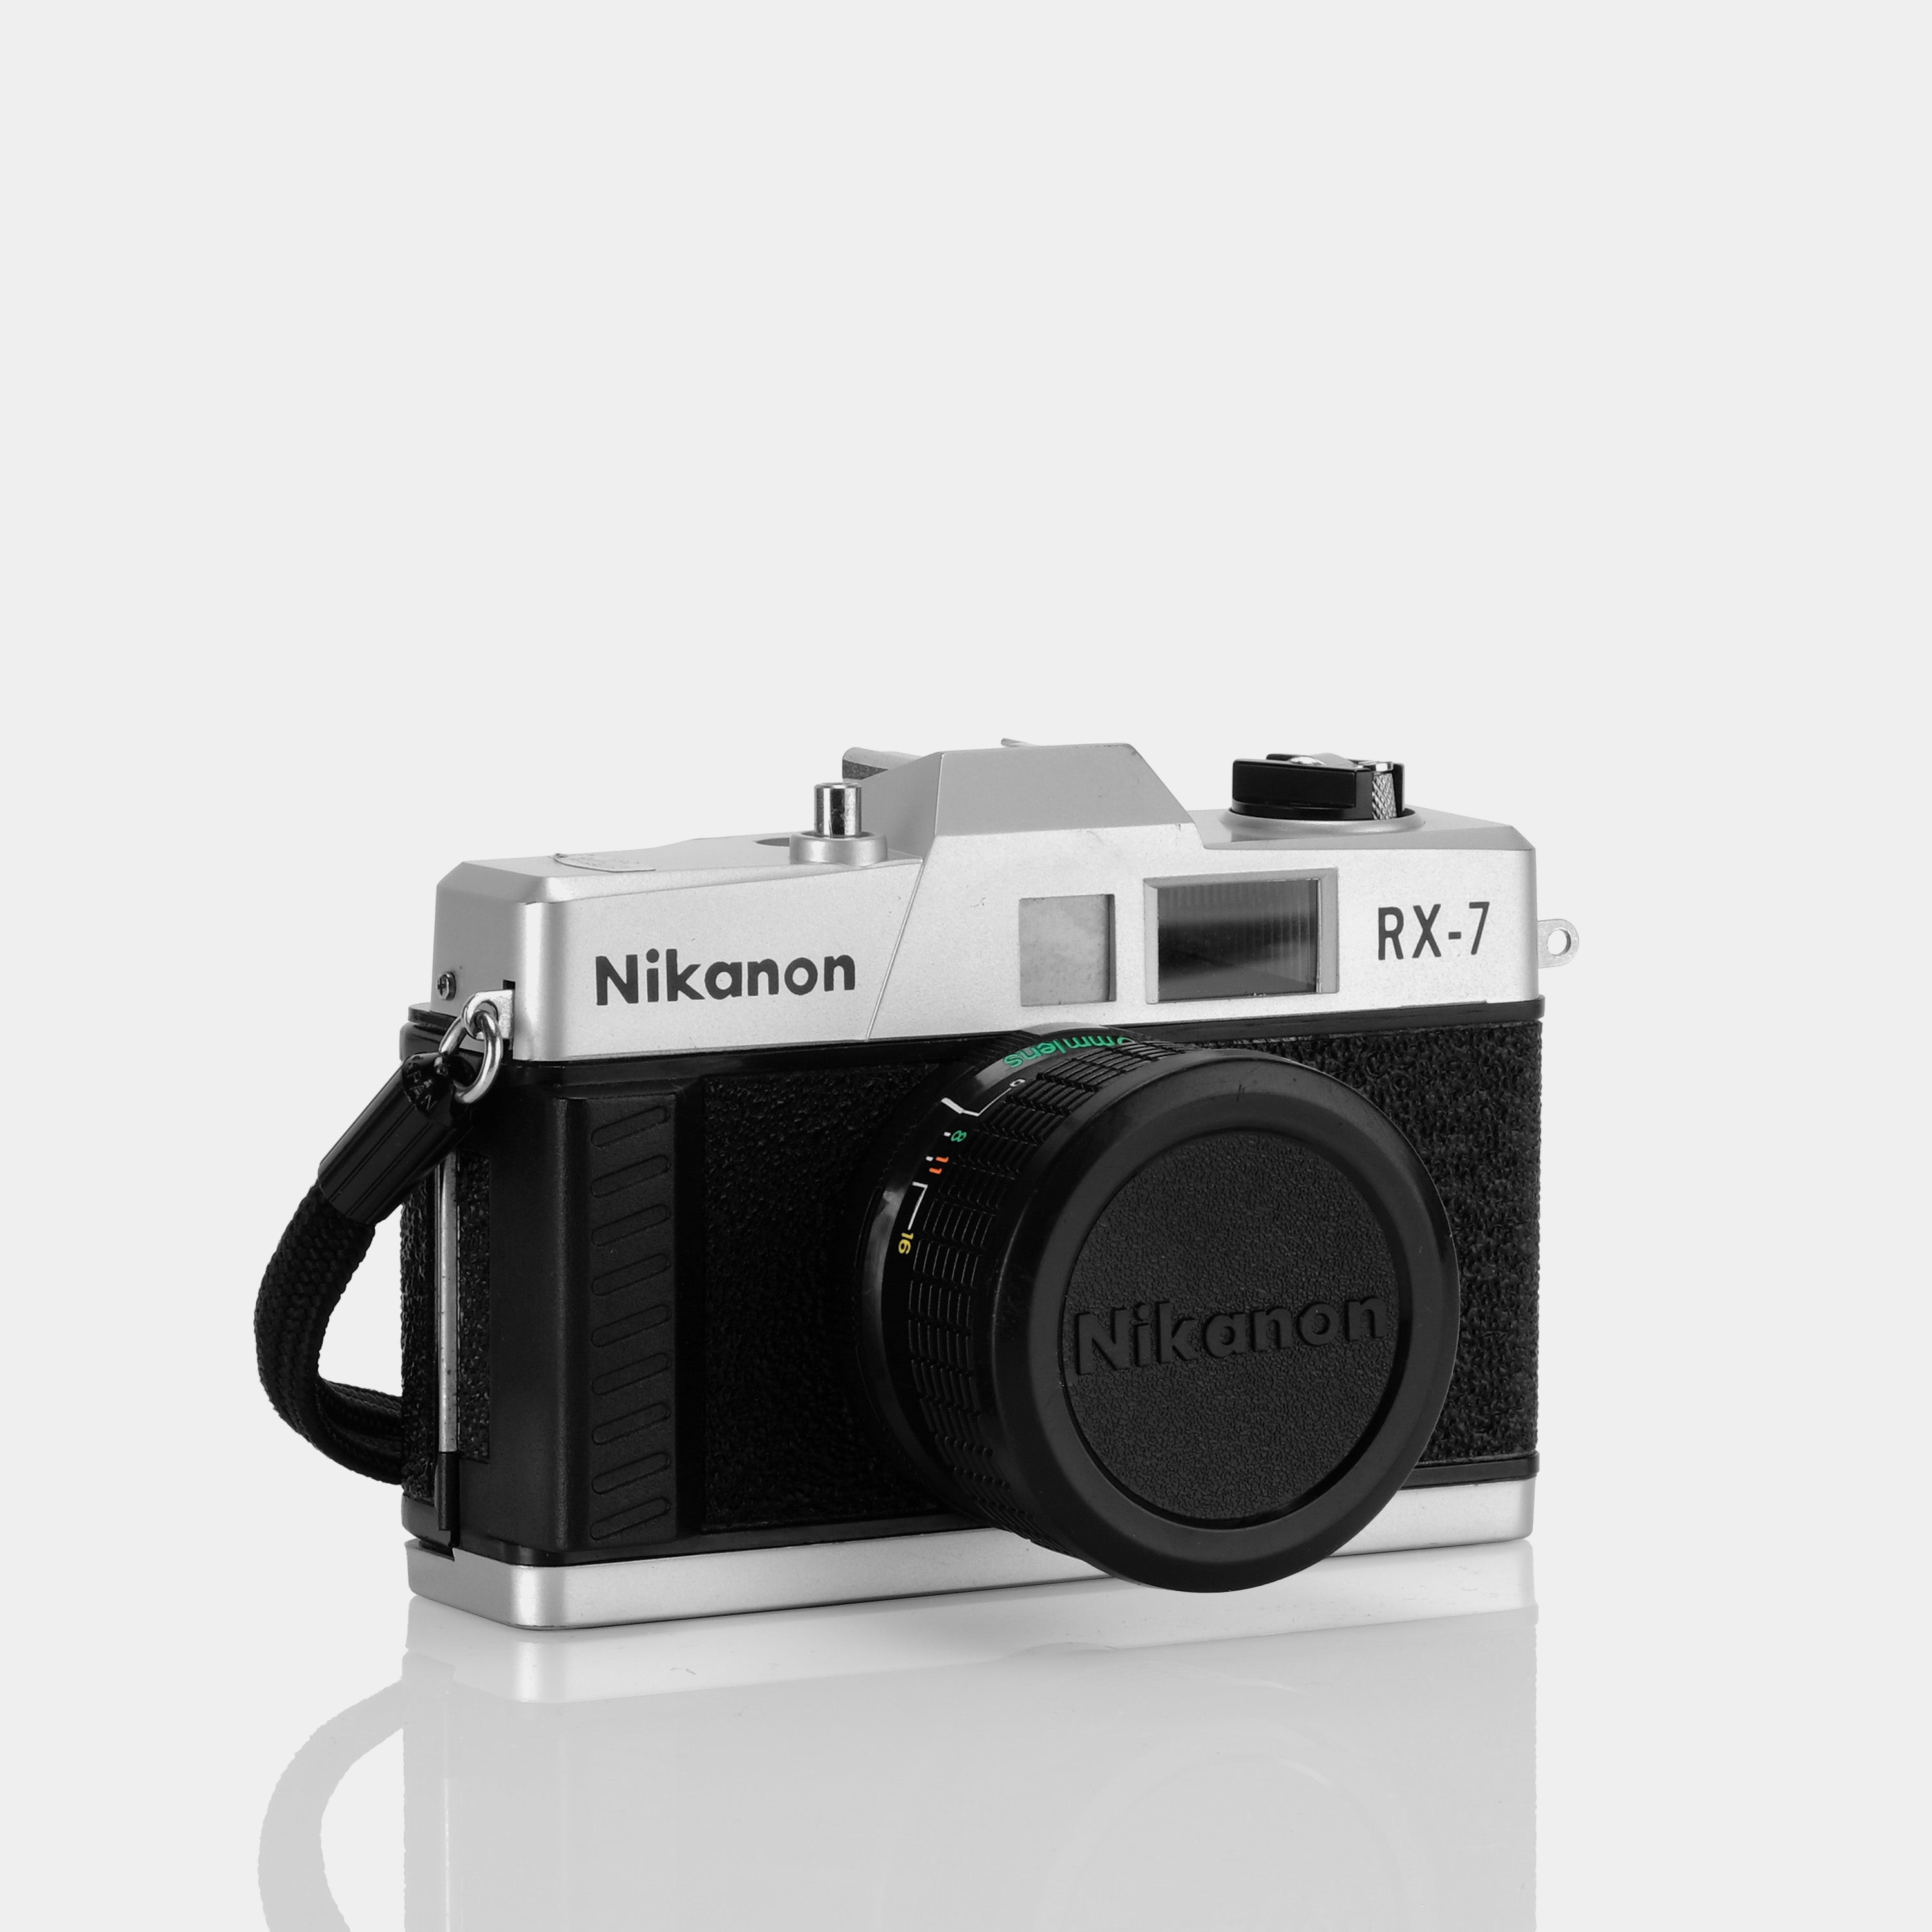 Nikanon RX-7 35mm Film Camera